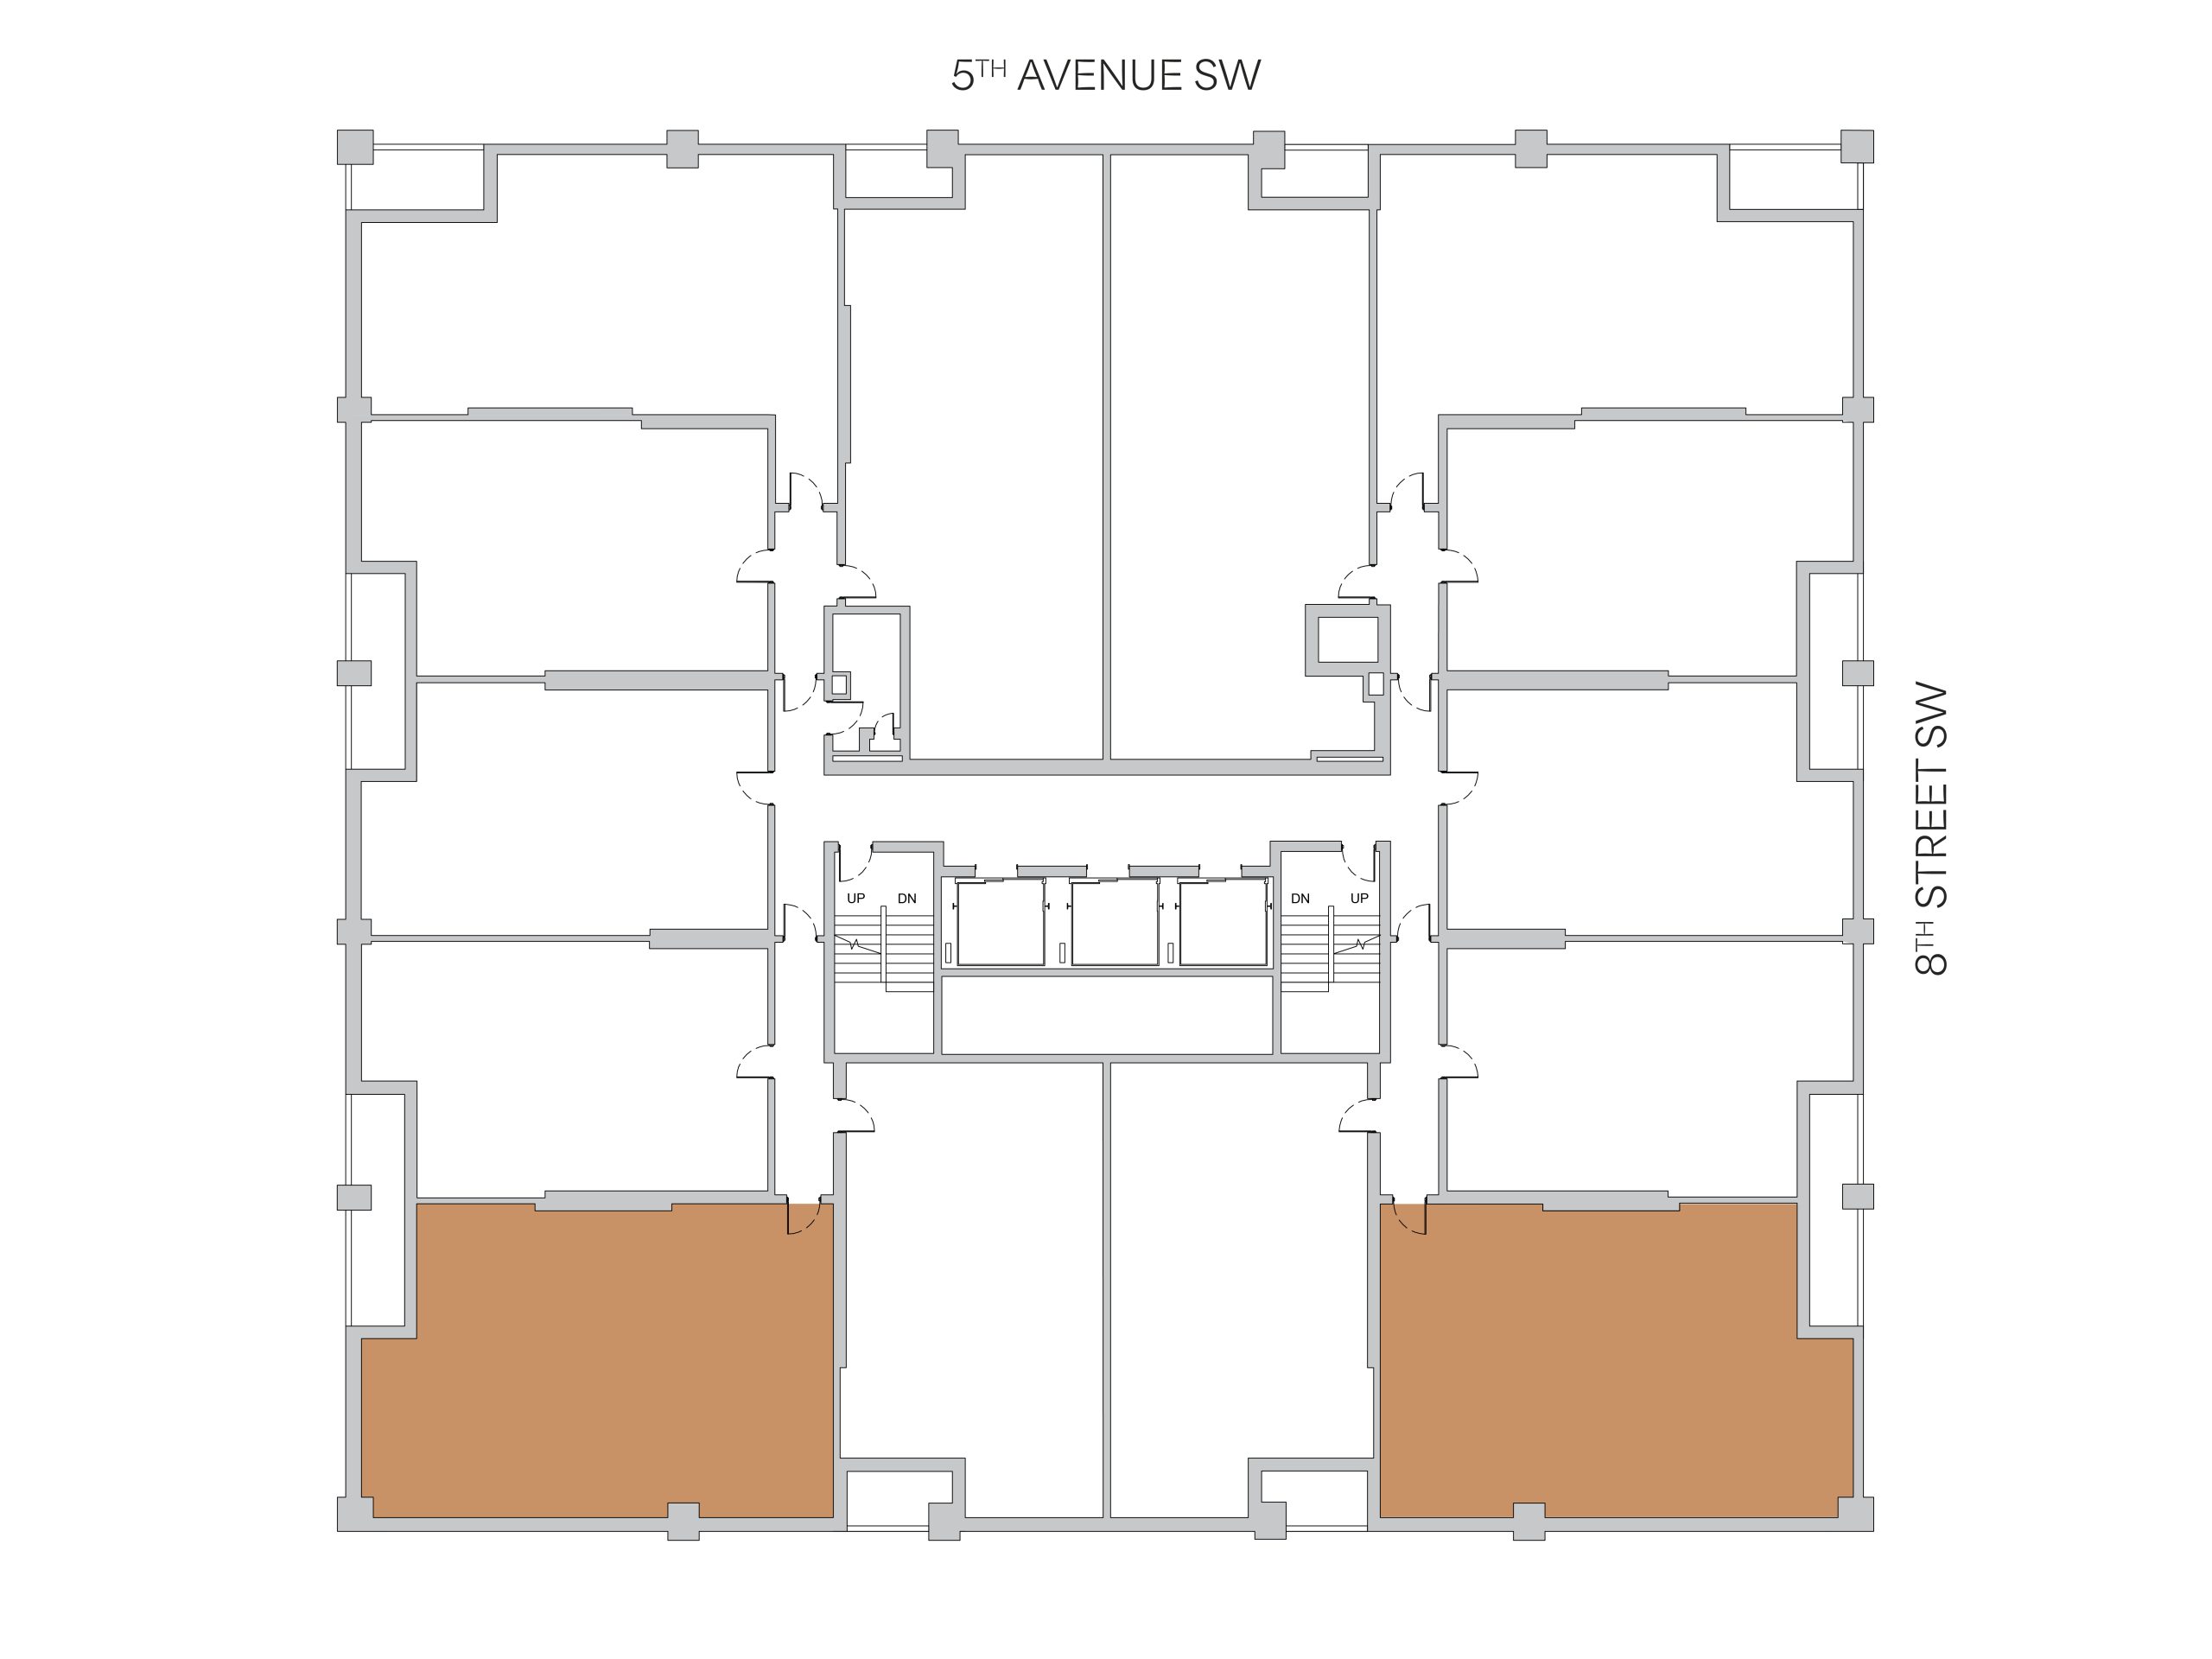 Location of Jade floor plans in The Cornerstone building